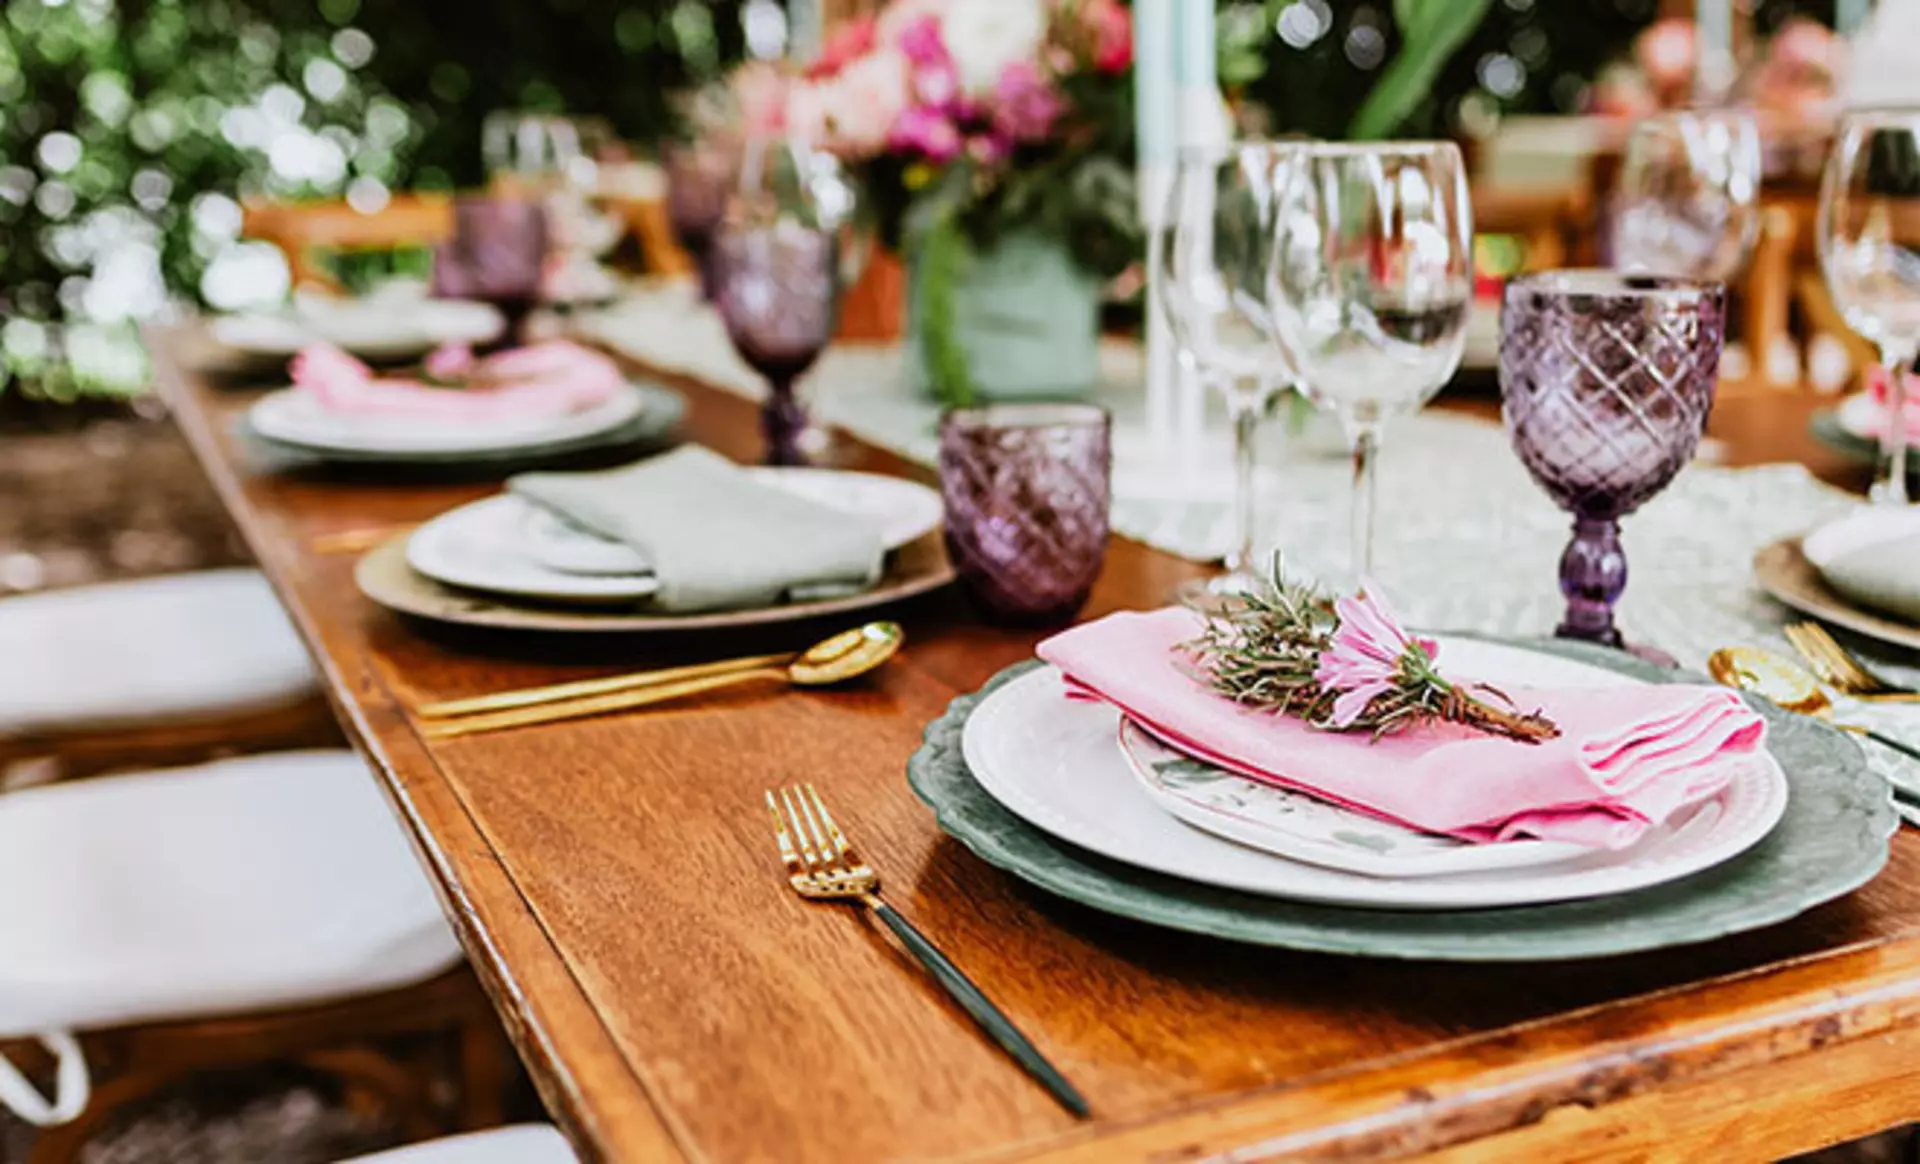 Esstisch aus Holz, dekoriert mit farbigen Tellern, klaren und violetten Gläsern, mit goldenem Besteck, rosa Servietten und frischen Blumen.